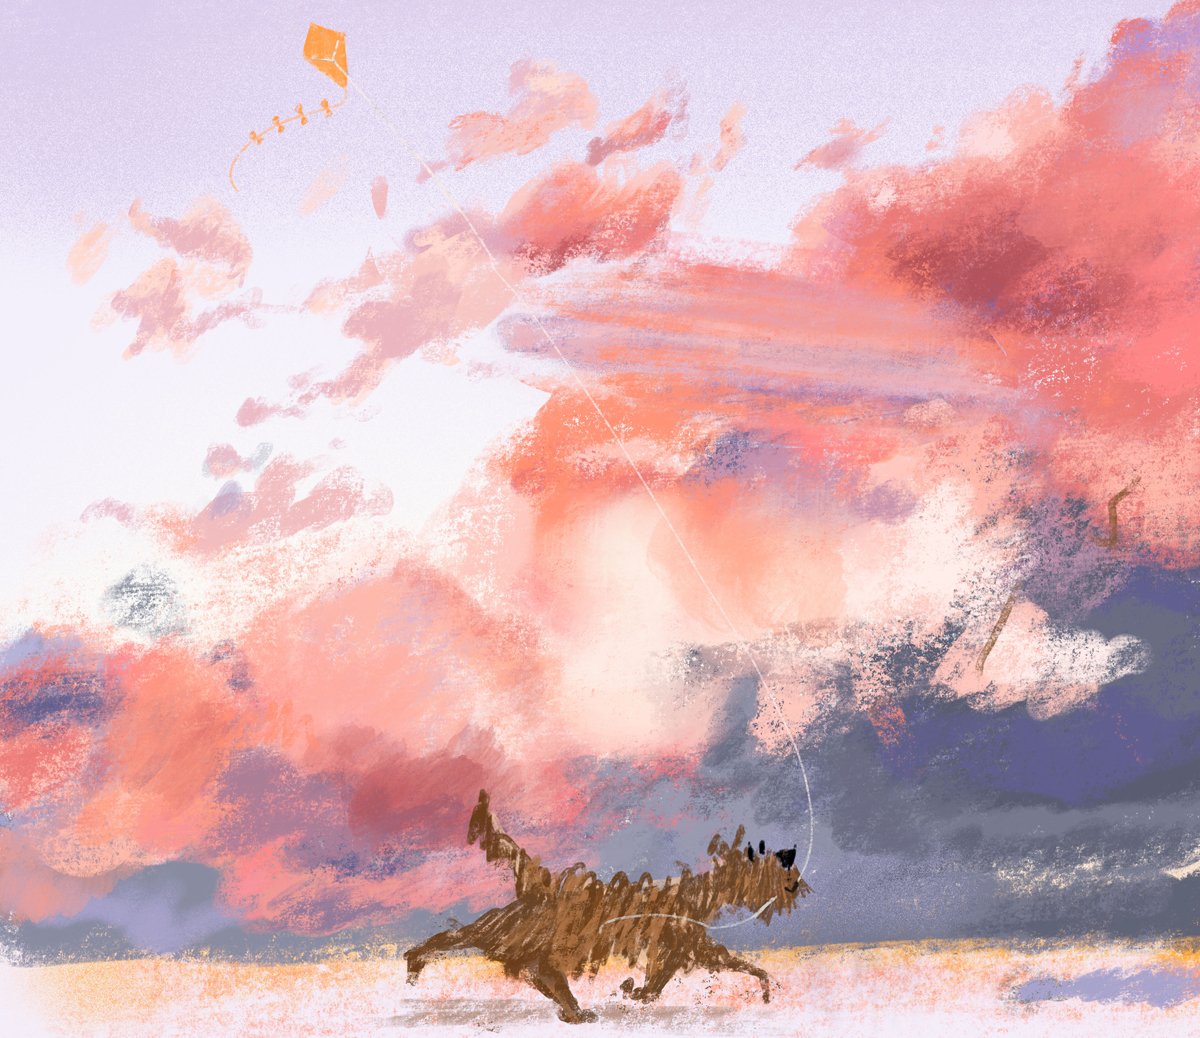 jenny-bloomfield-pink-sky-with-dog-illustration.jpg